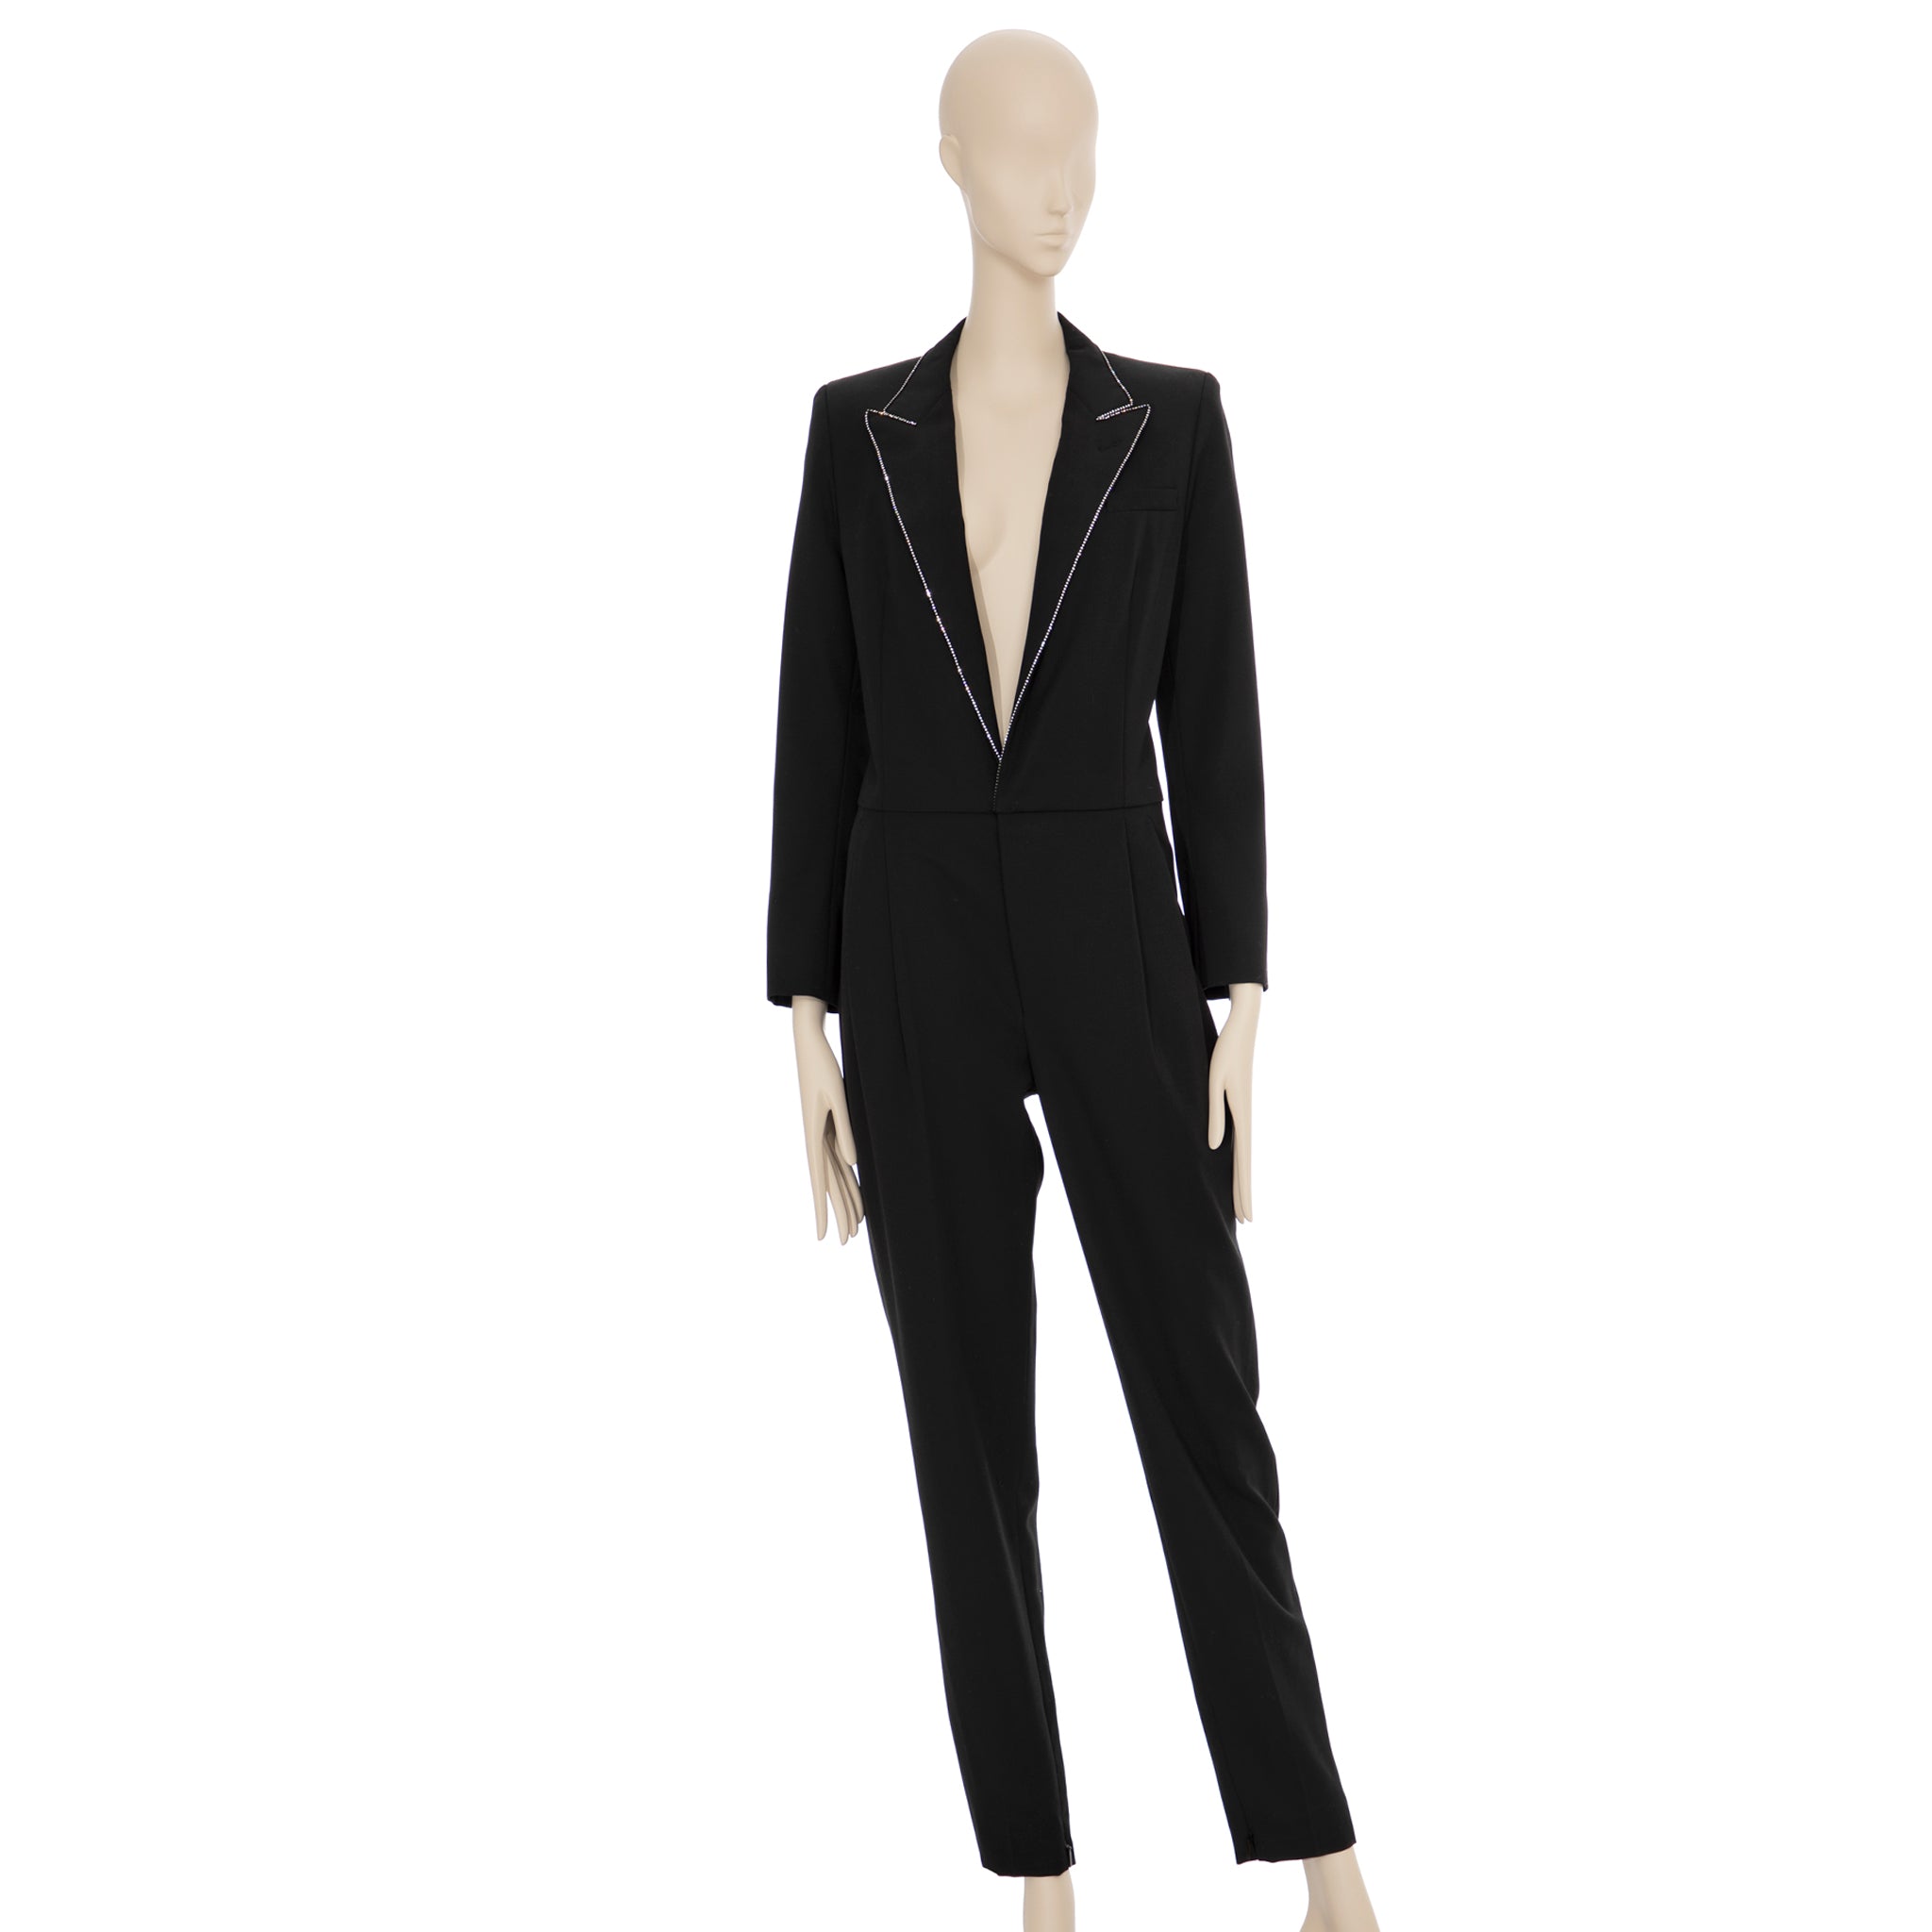 Saint Laurent Black Tuxedo Jumpsuit With Crystals 38 FR